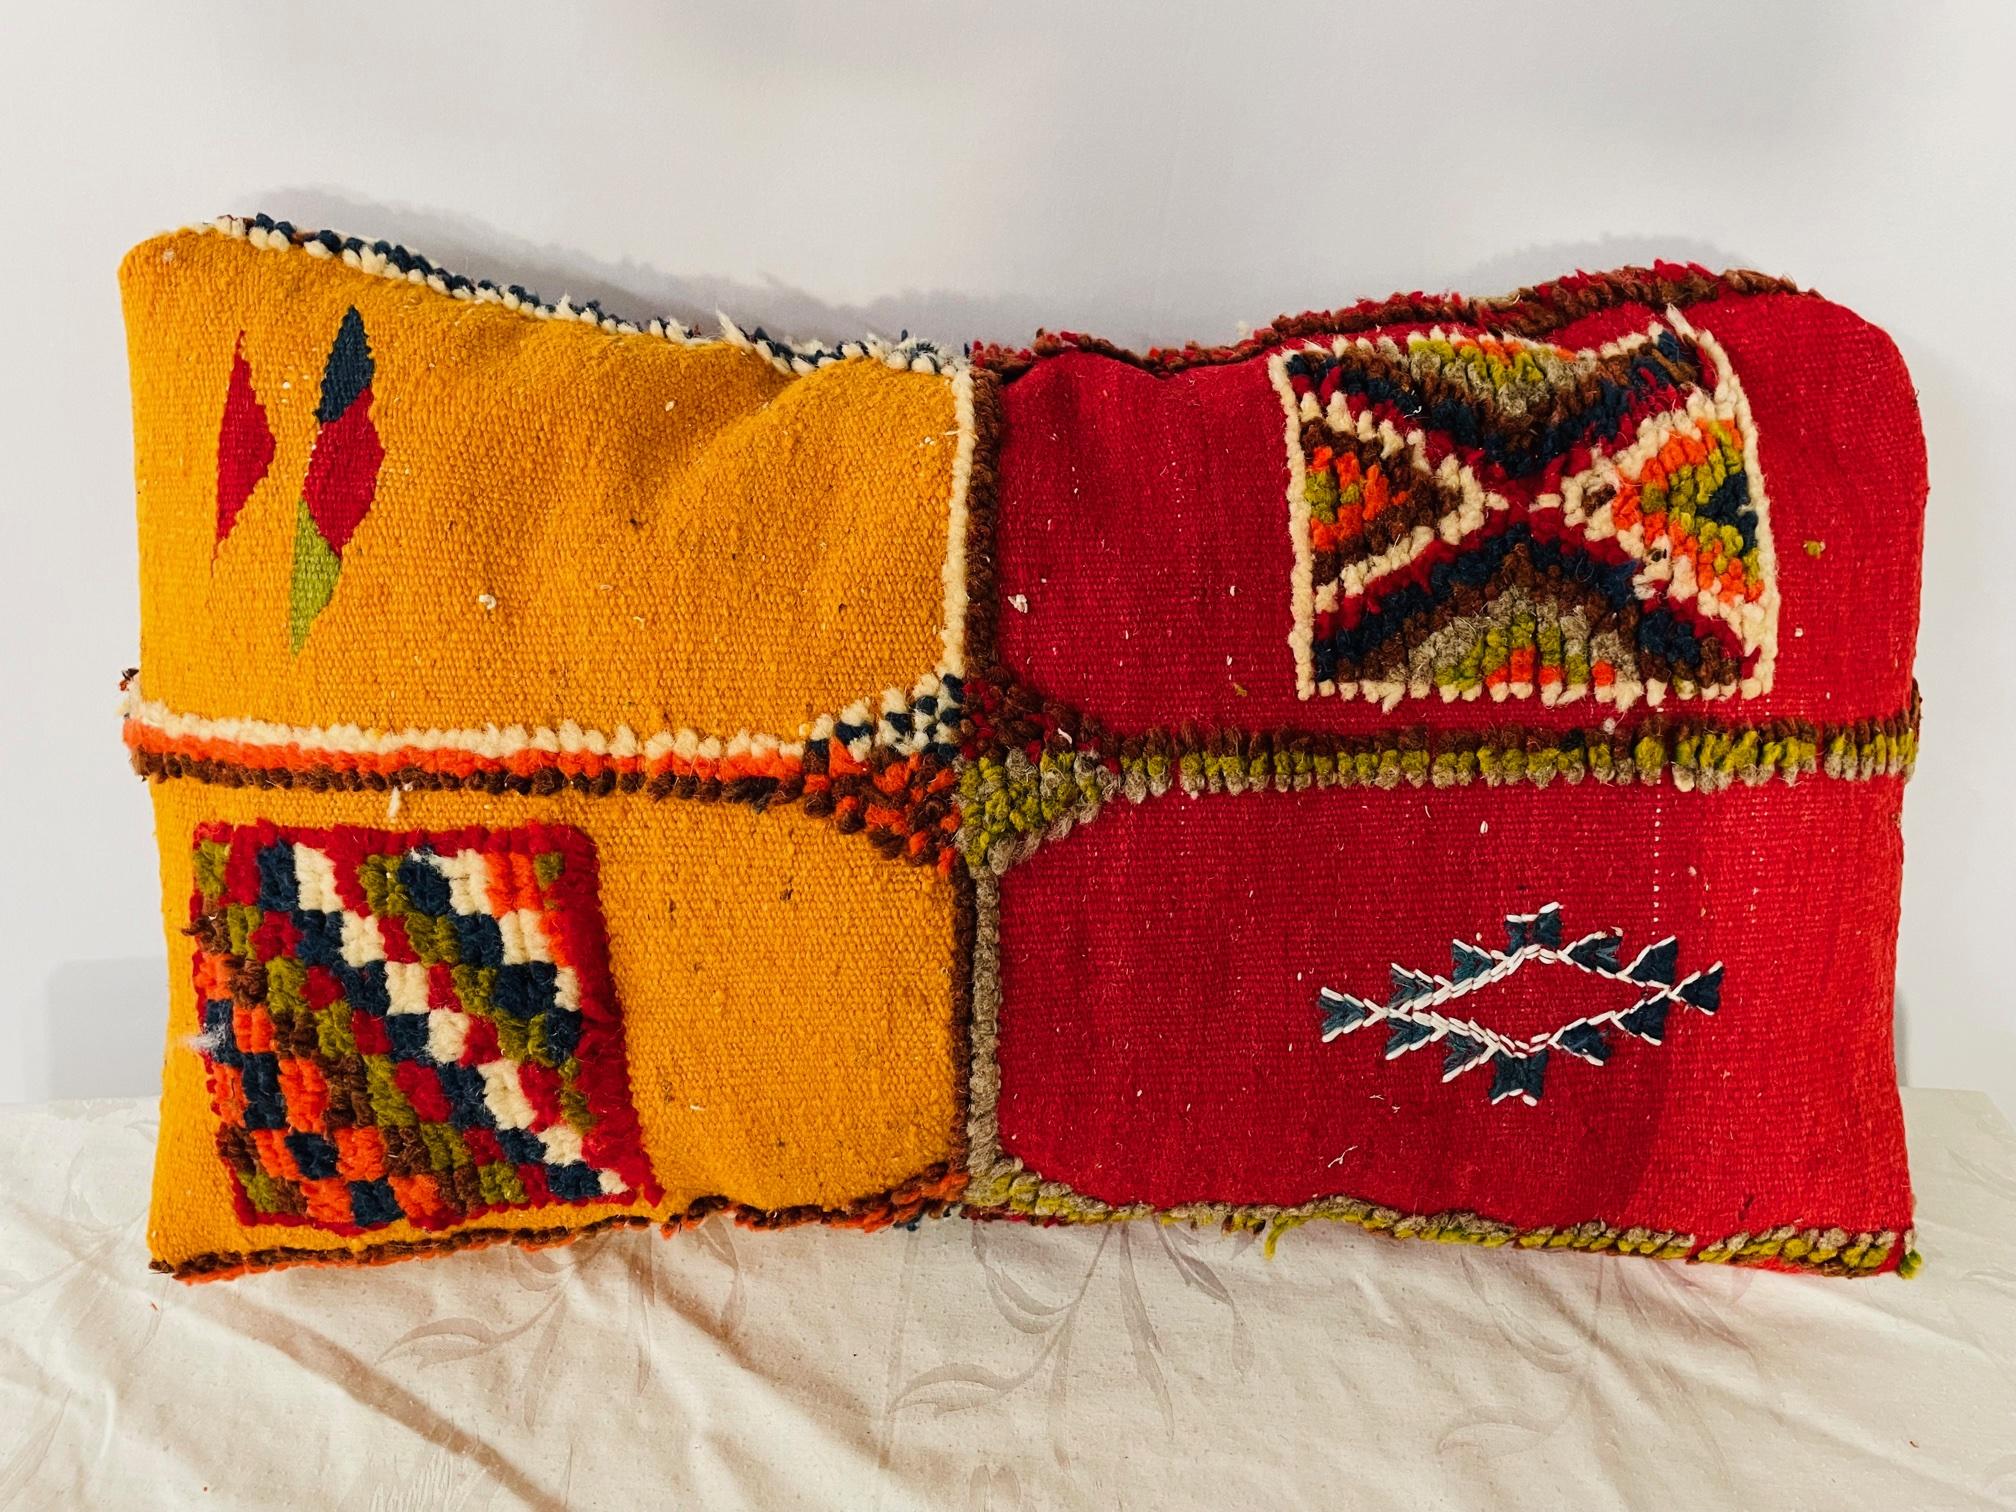 Dieses einzigartige Paar Kelim-Kissen oder -Kissen wurde aus einem alten marokkanischen Teppich hergestellt, der in der Berberregion des Atlasgebirges handgewebt wurde. Es zeichnet sich durch leuchtend gelbe, senfgelbe und rote Farben und